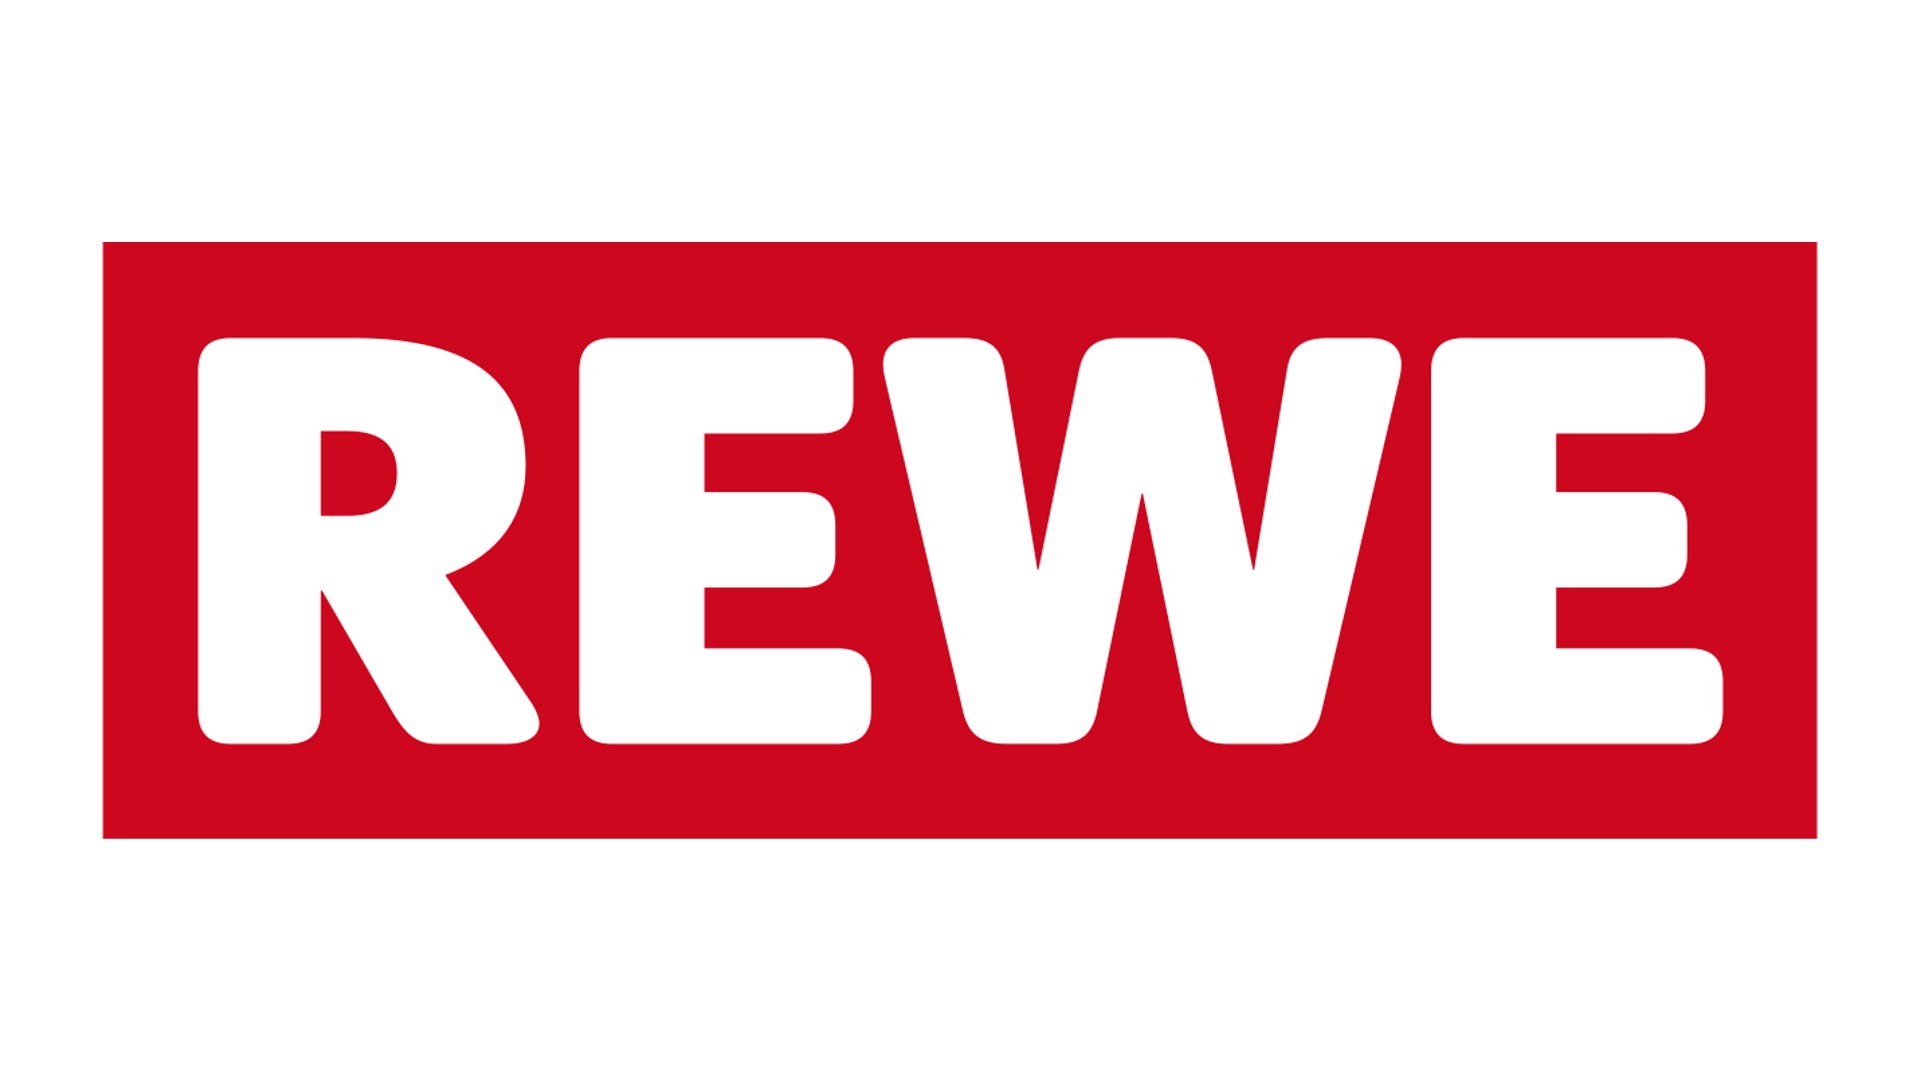 REWE Group - Europas führender Lebensmitteleinzelhändler mit einer tief verwurzelten Geschichte.